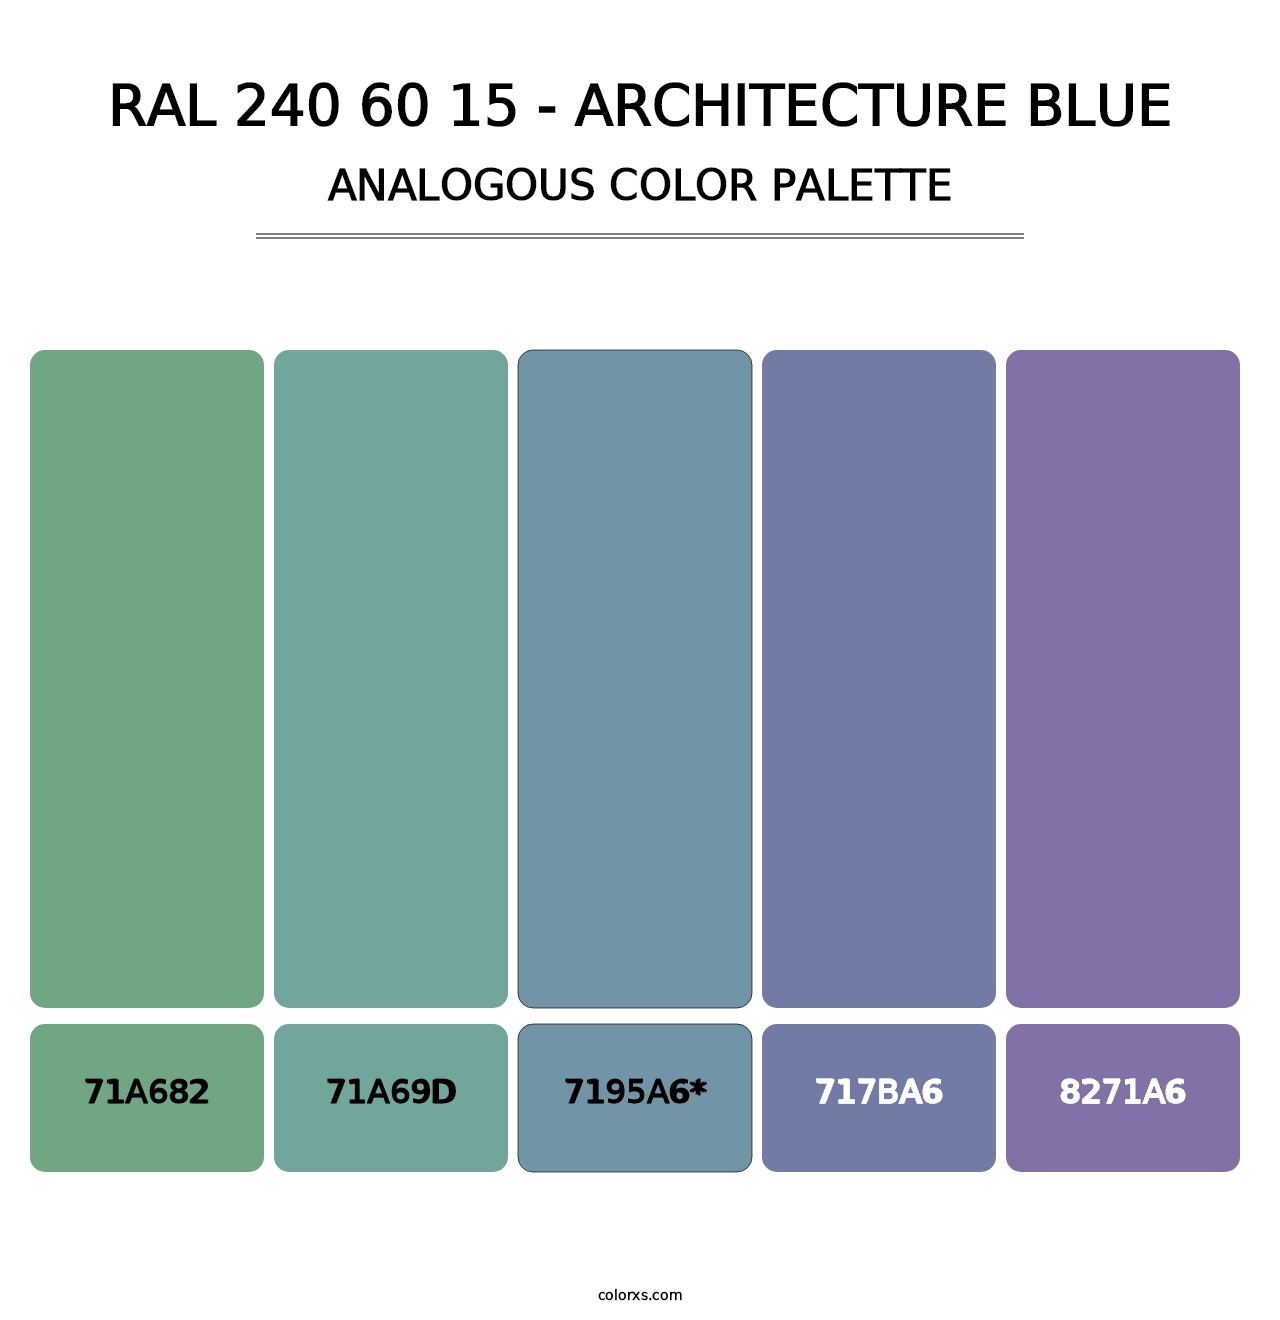 RAL 240 60 15 - Architecture Blue - Analogous Color Palette